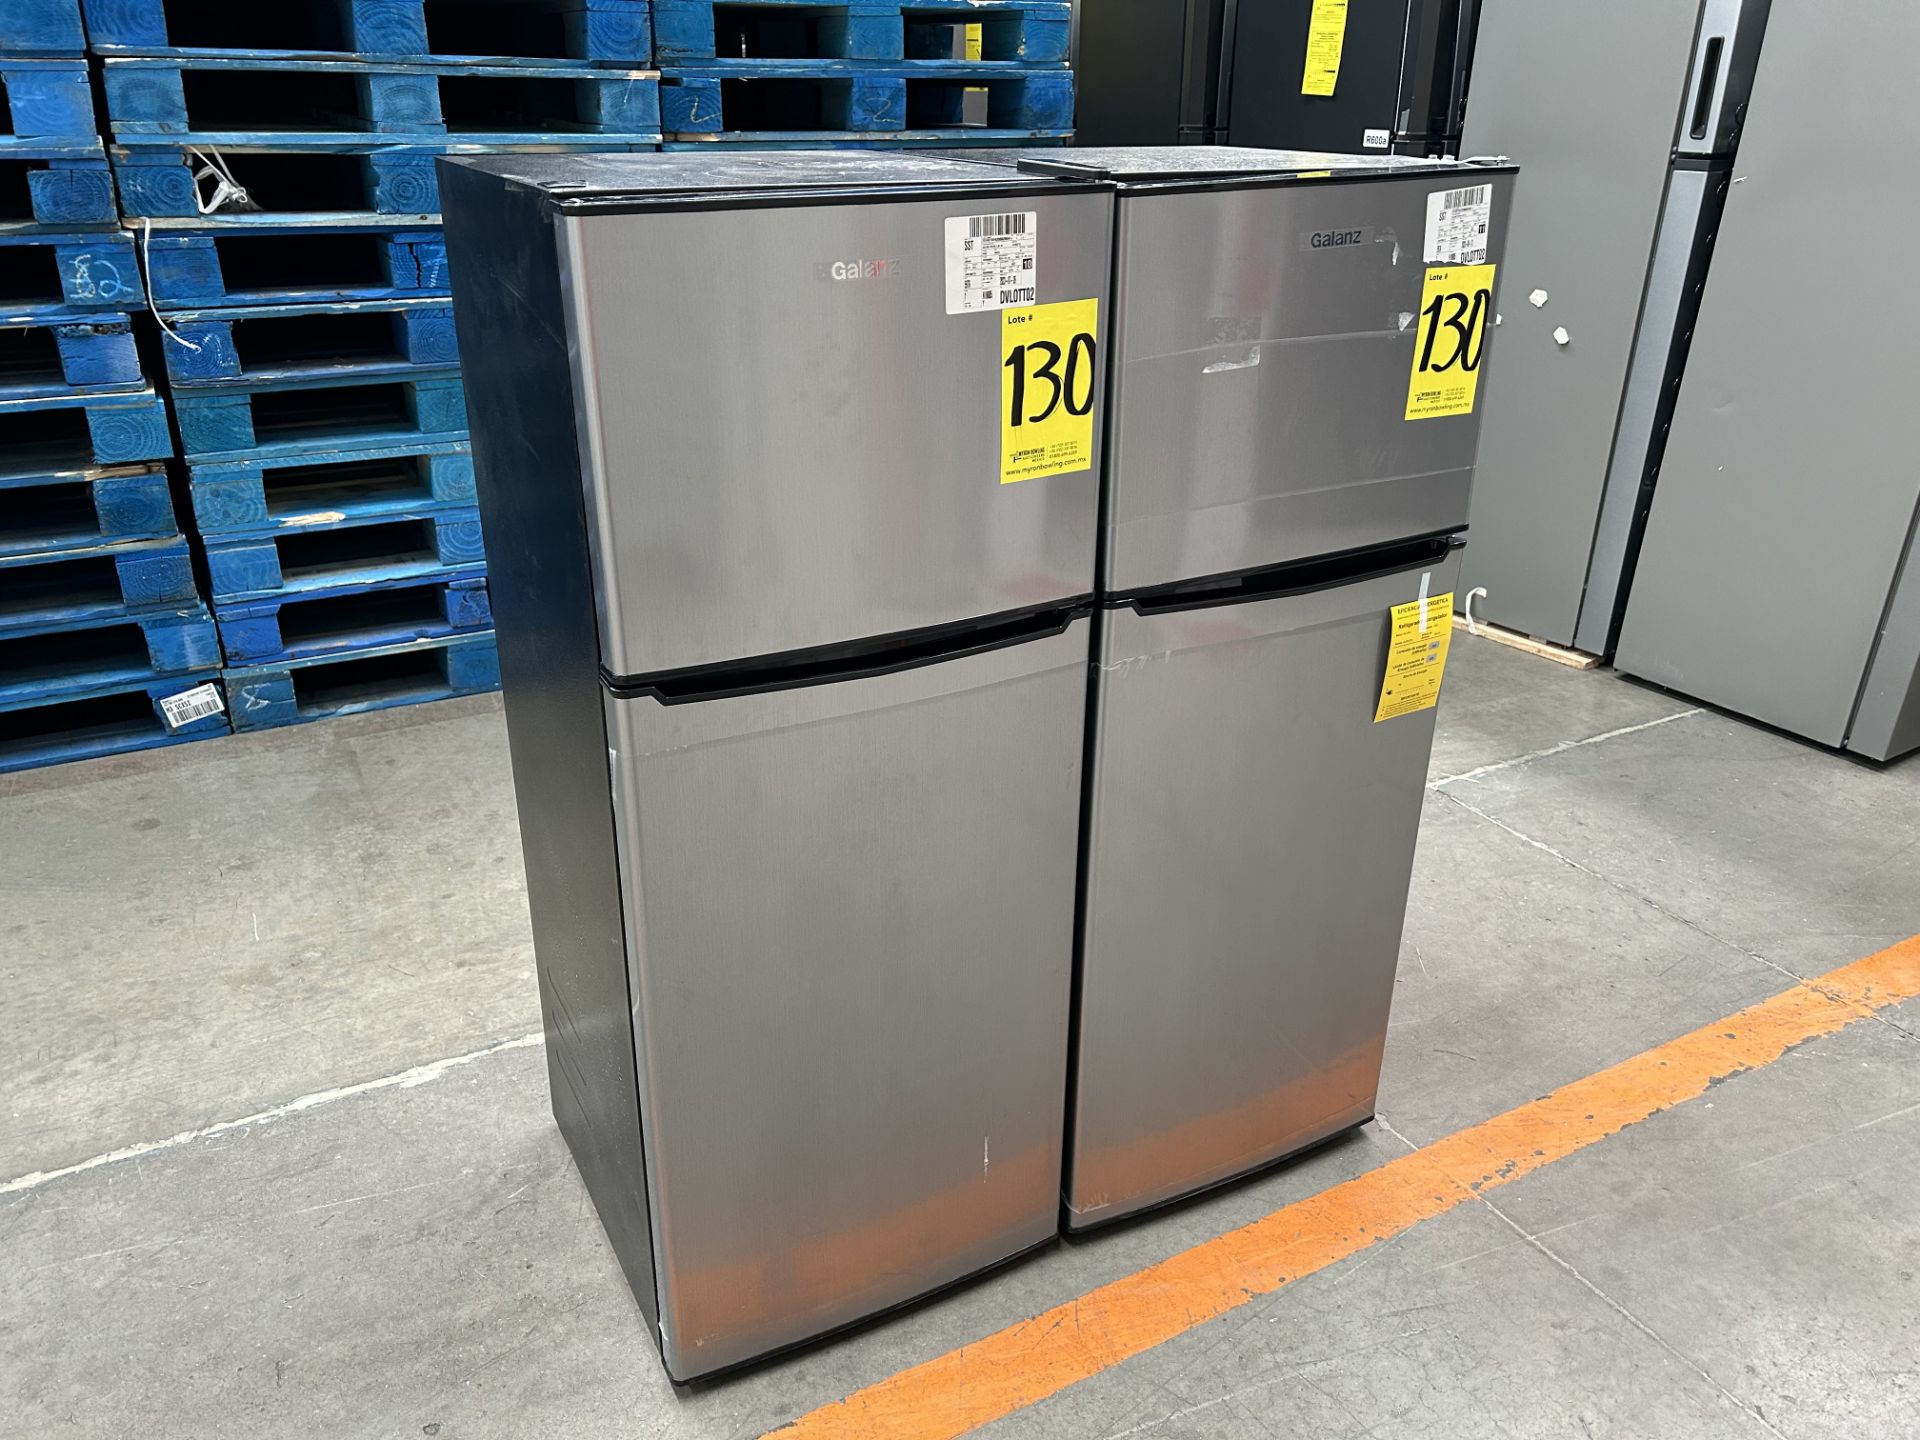 Lote de 2 refrigeradores contiene: 1 Refrigerador Marca GALANZ, Modelo GLR55TS1, Serie 06723, Color - Image 3 of 6